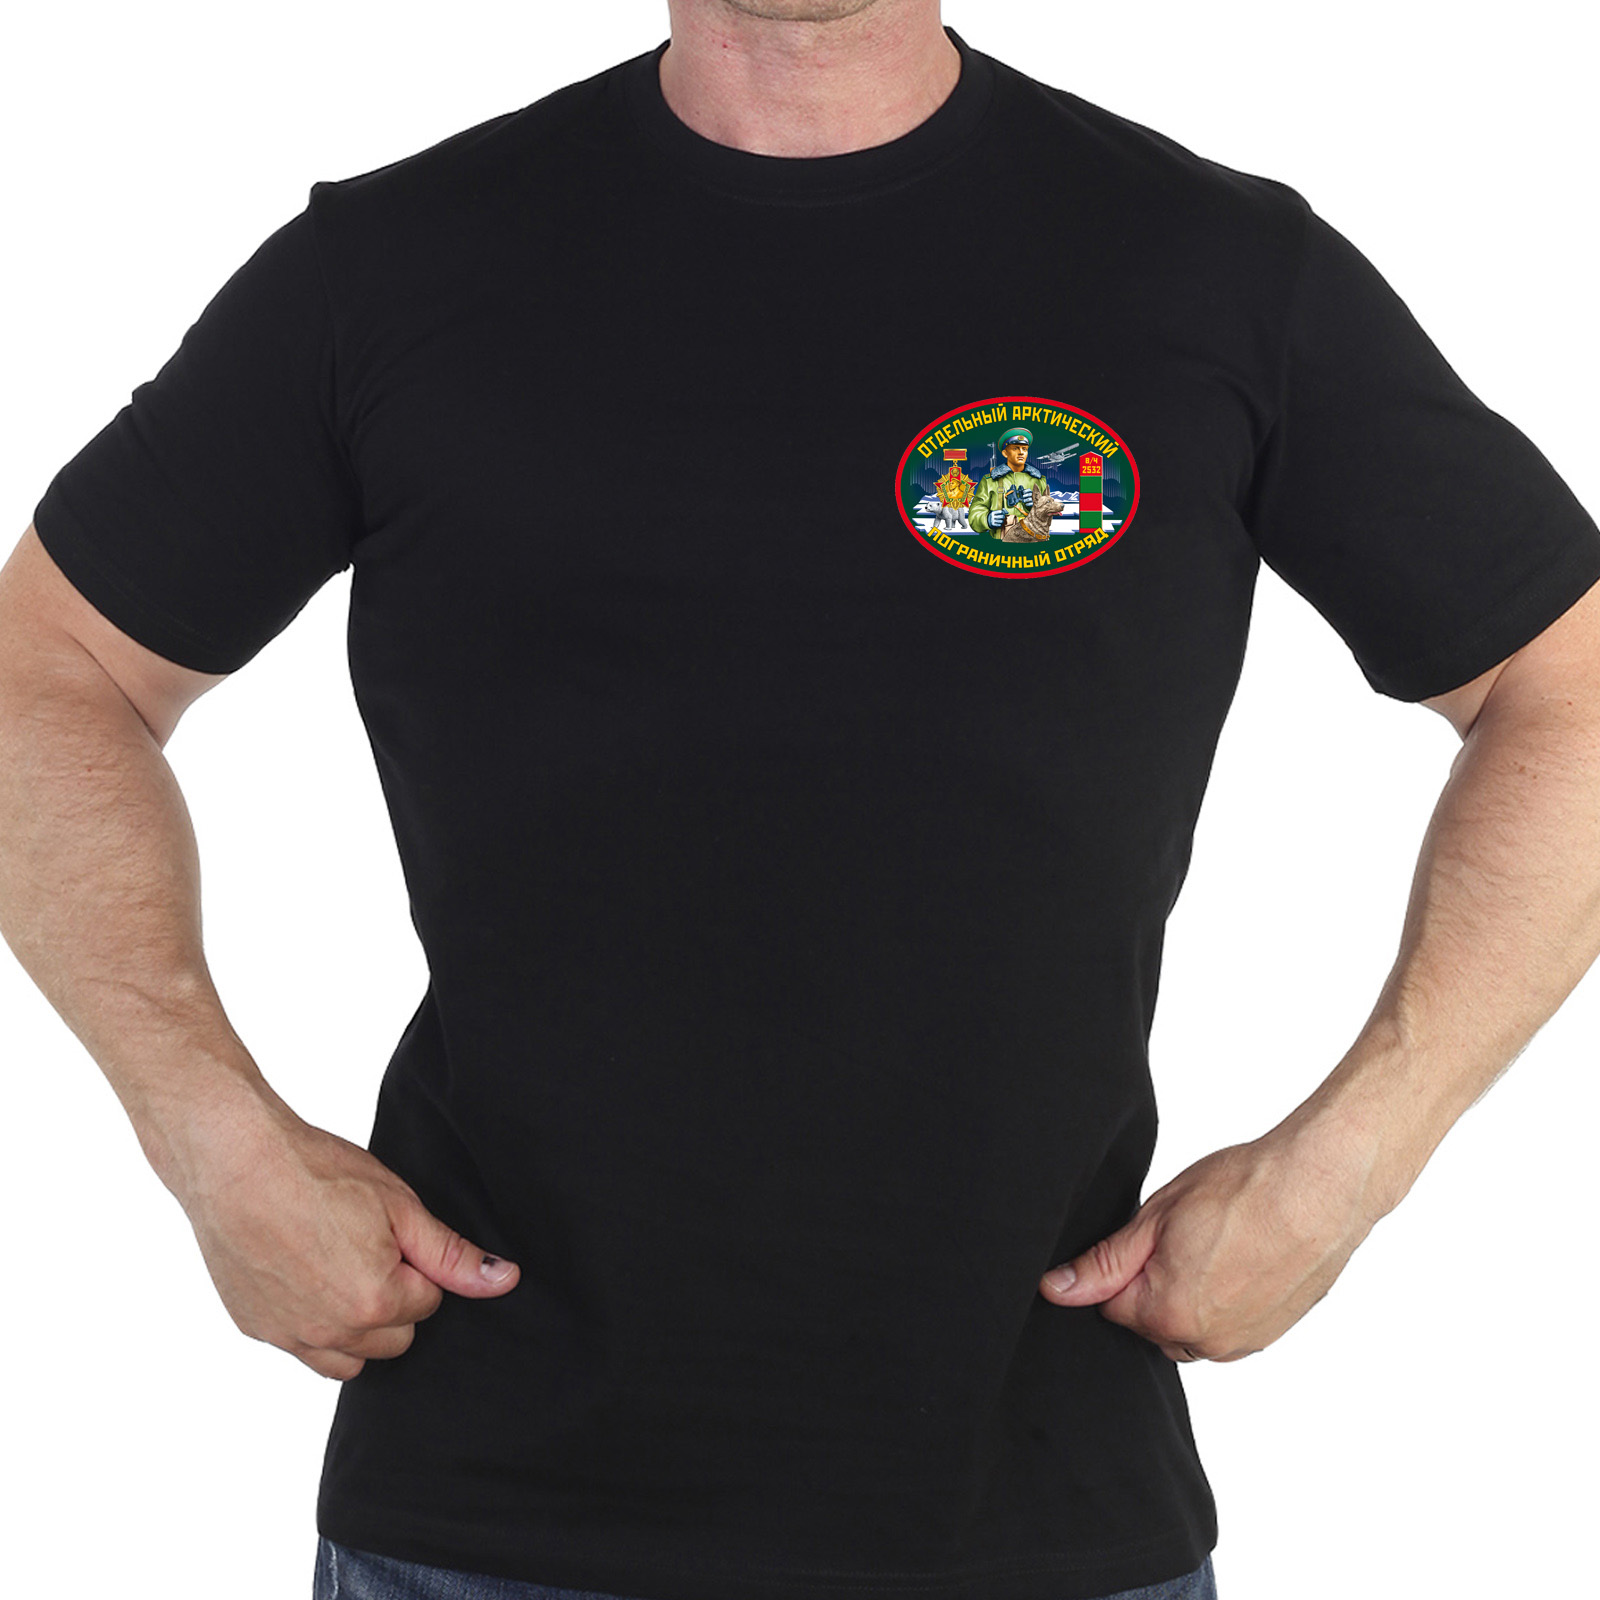 Чёрная футболка "Отдельный Арктический пограничный отряд"